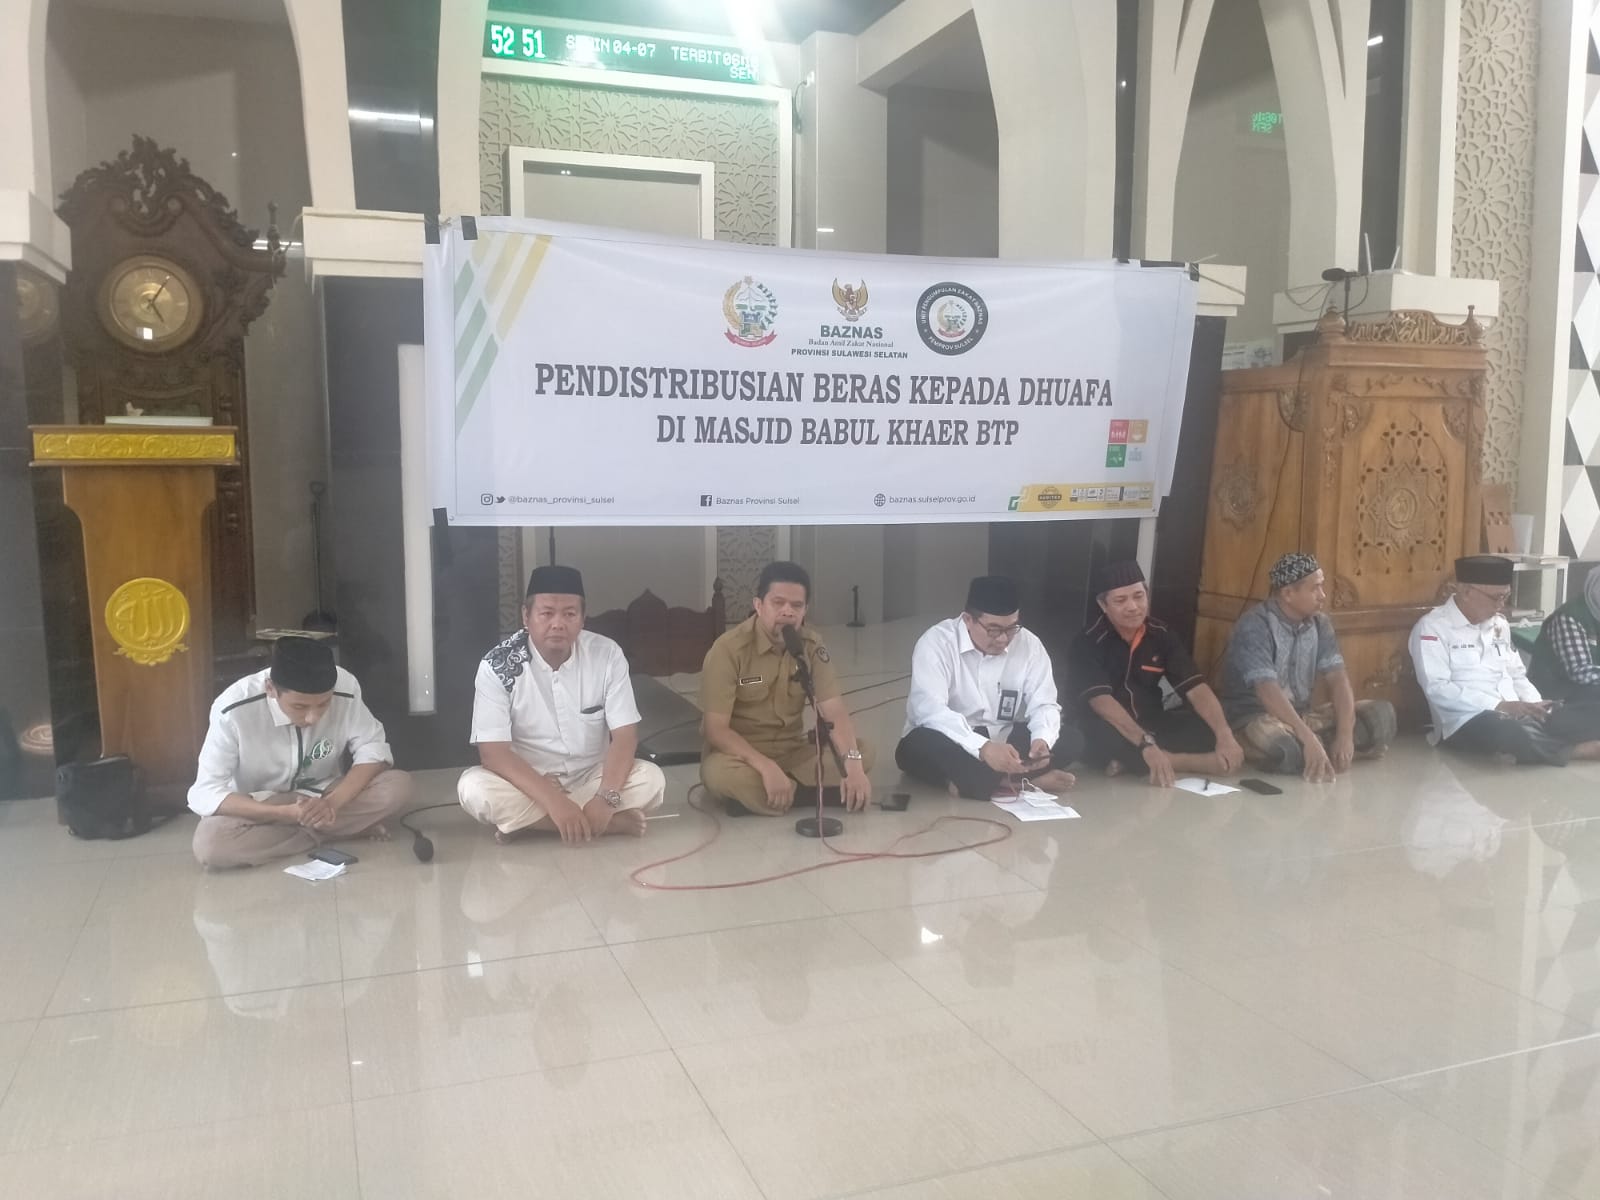 UPZ Baznas Pemprov Sulsel Salurkan Beras Kepada Kaum Dhuafa di Makassar